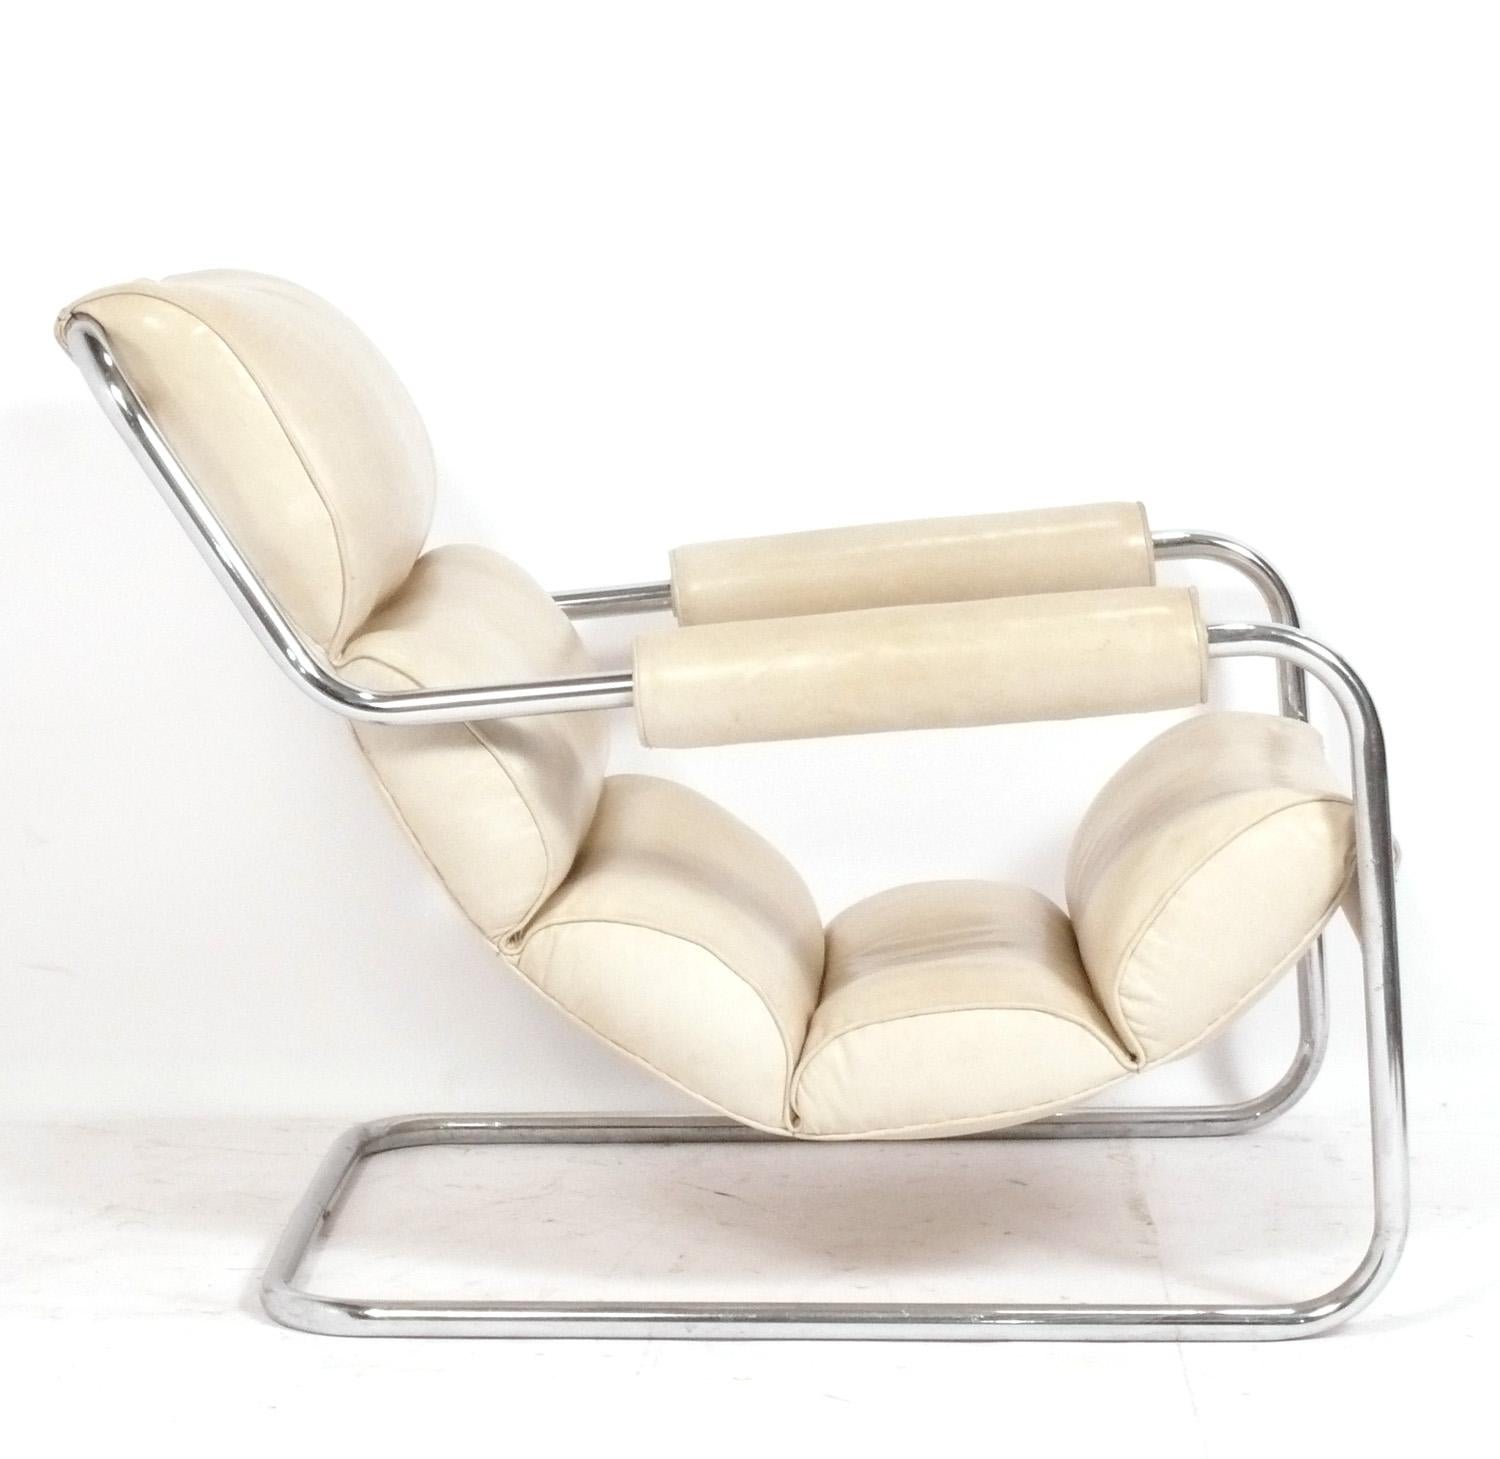 Seltener verchromter Art-Déco-Sessel, entworfen von Donald Deskey für Metallon, amerikanisch, ca. 1930er Jahre. Dieser Stuhl ist in der Zeitschrift Arts and Decoration, April 1935, S. 31, dokumentiert. Siehe die letzten beiden Fotos. Es ist auch in